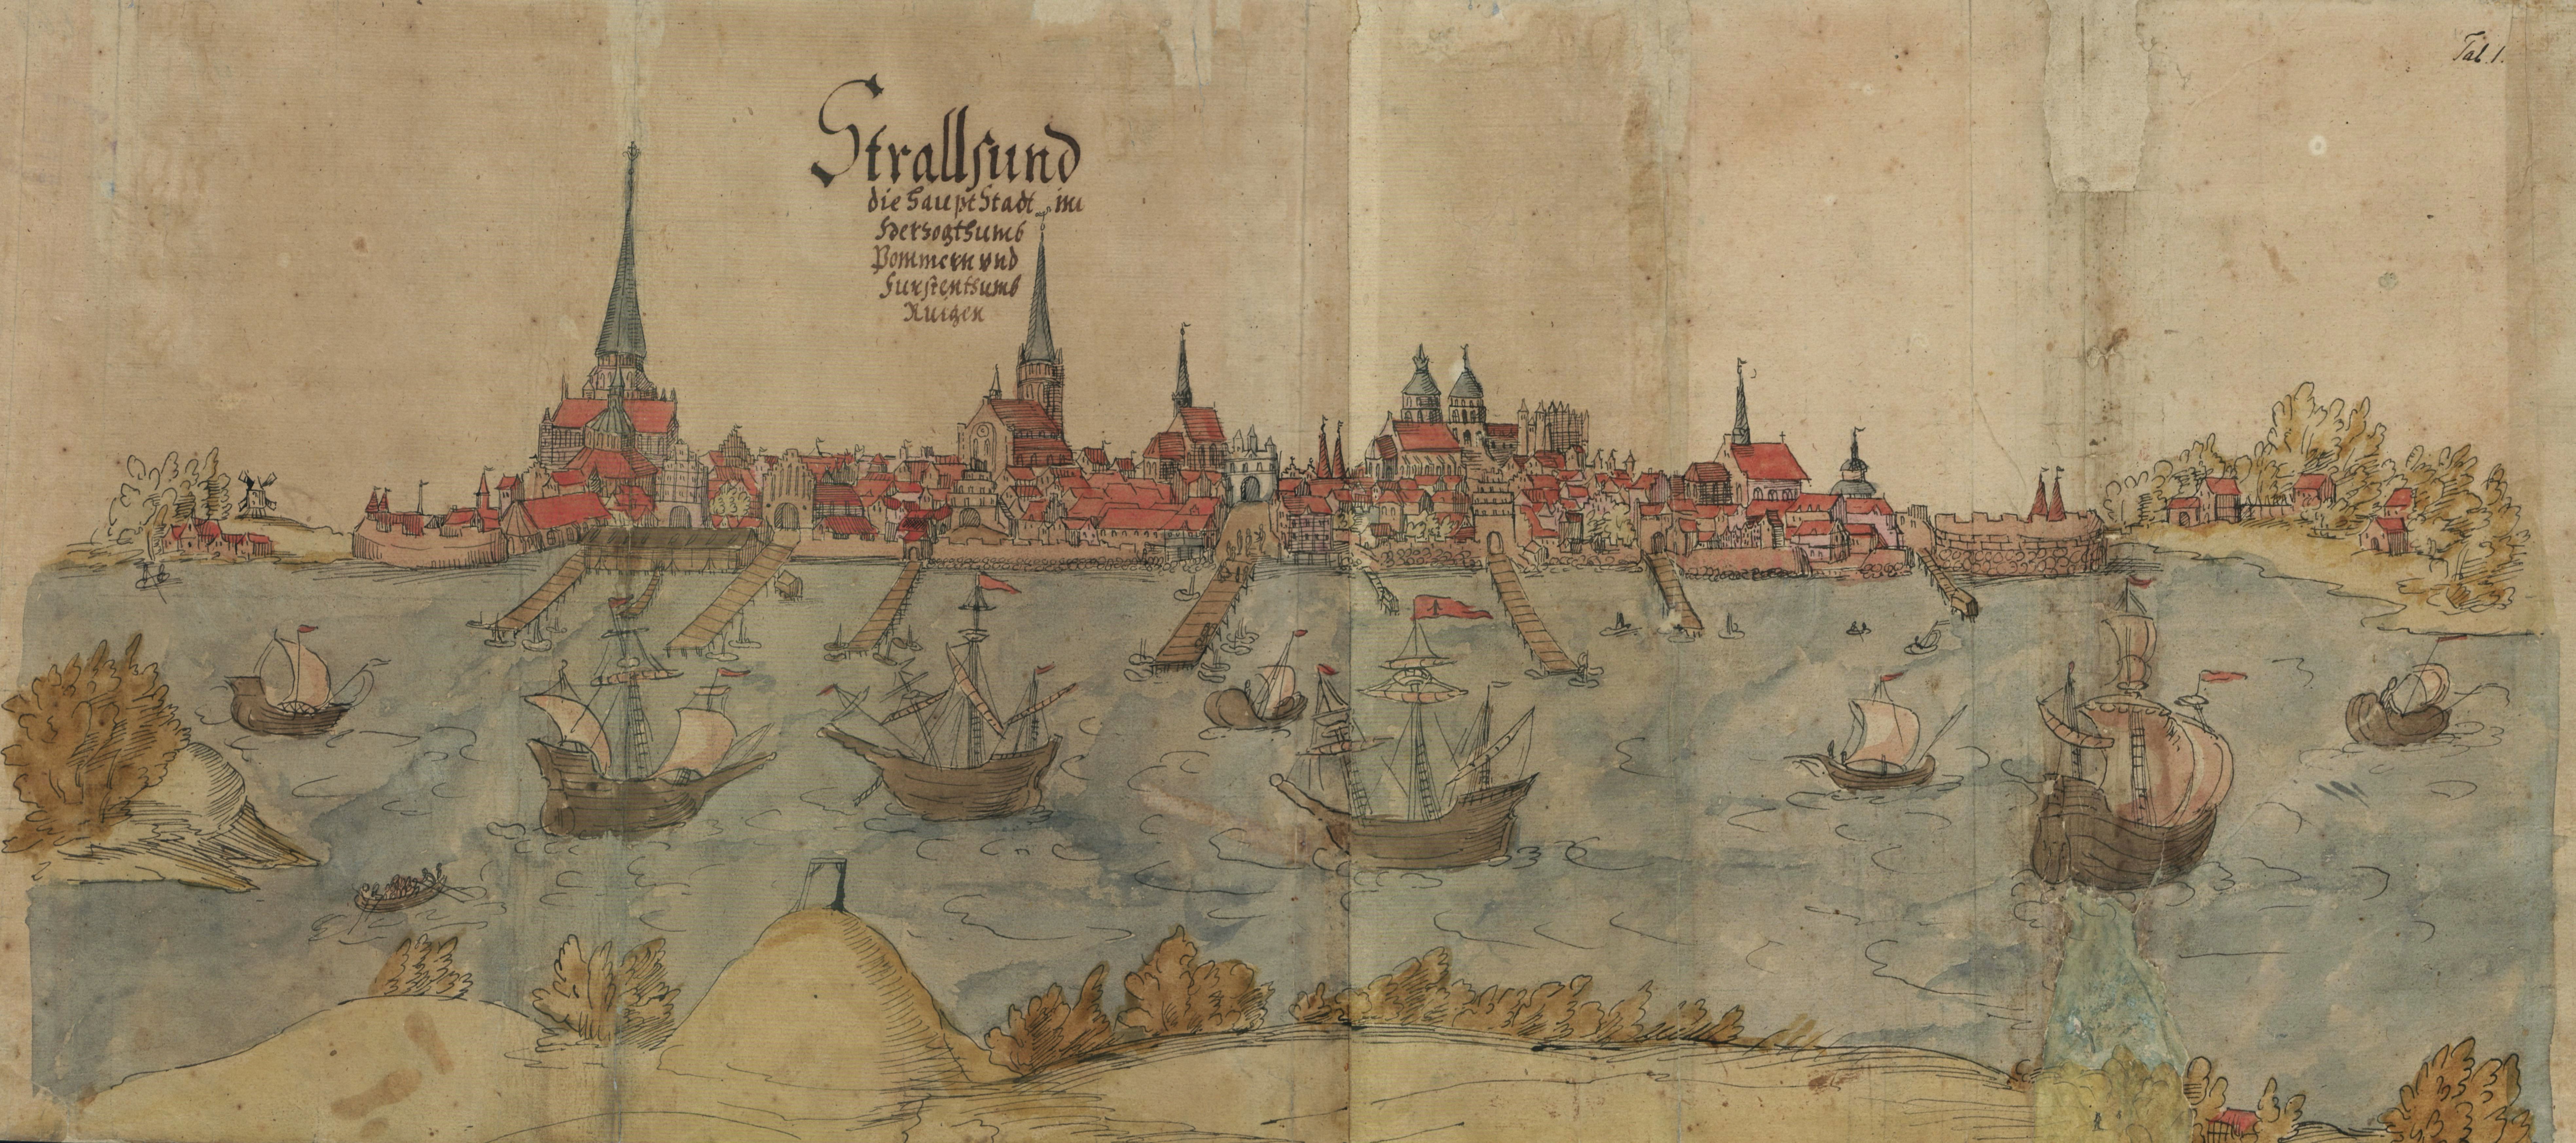 Stralsund-die-Hansestadt-im-Herzogtum-Pommern.jpg